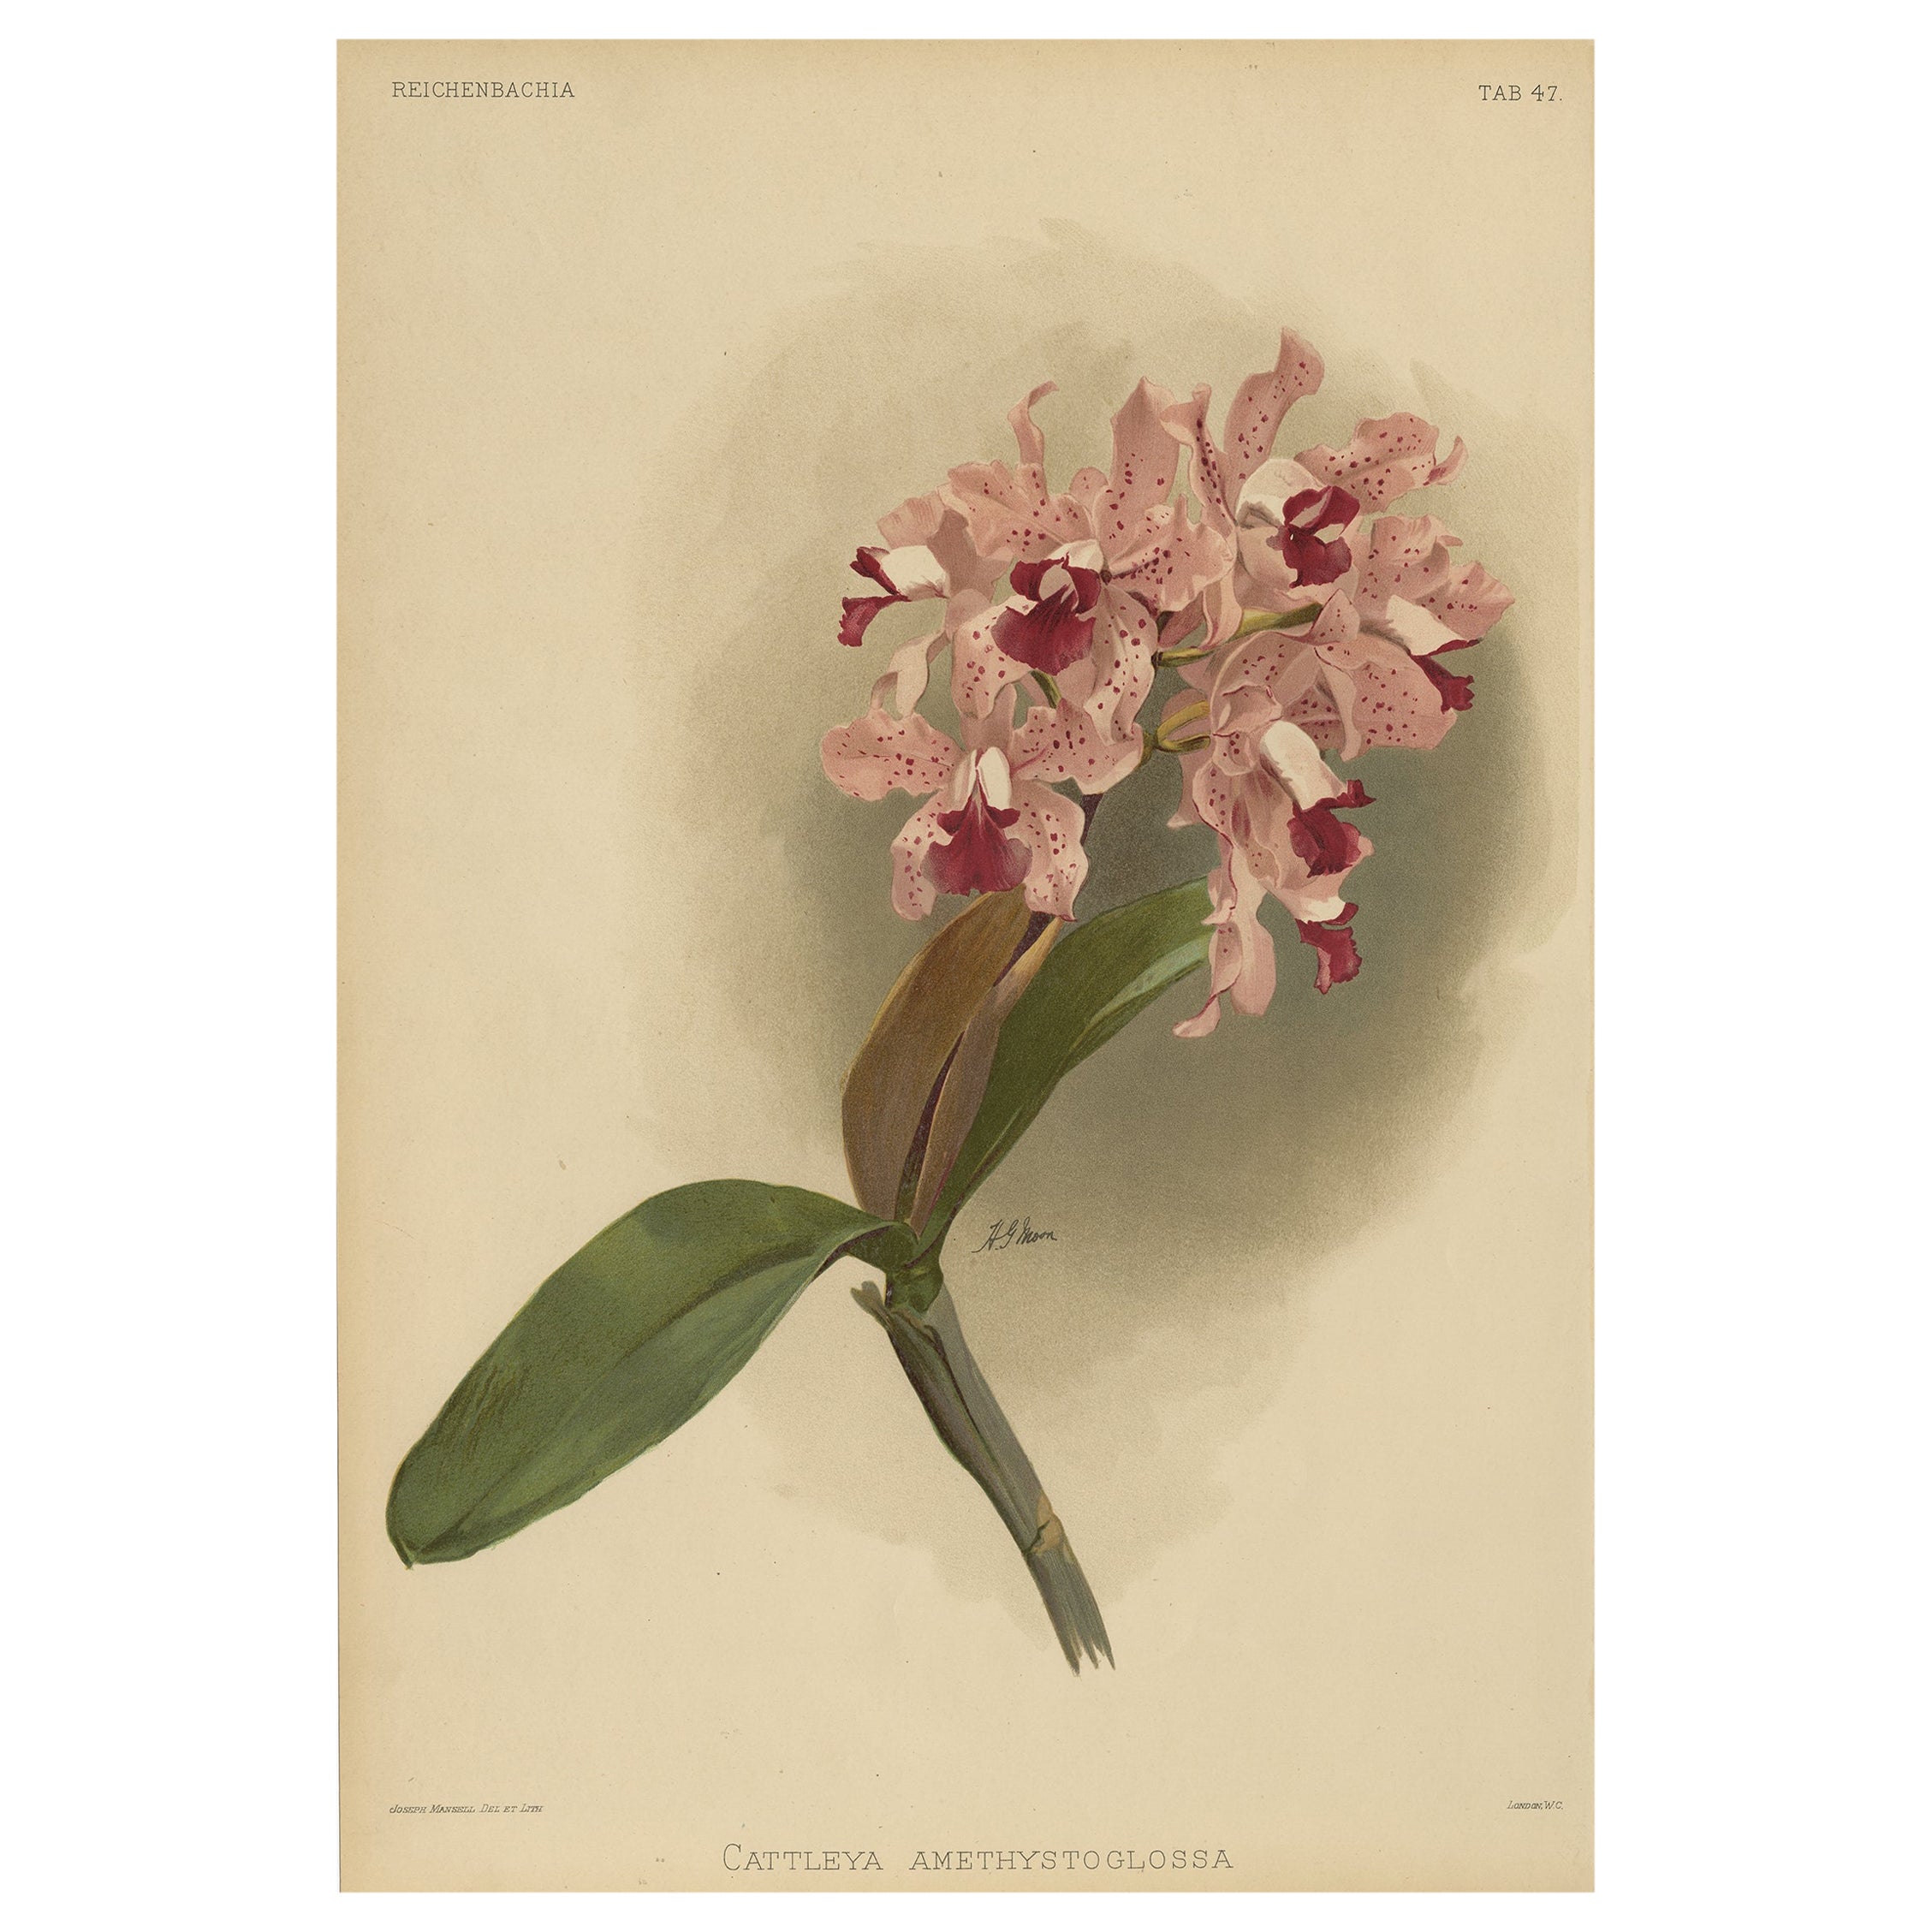 Wunderschöner, beeindruckender, großer, antiker Folio-Druck einer Orchidee in Foliogröße, 1888